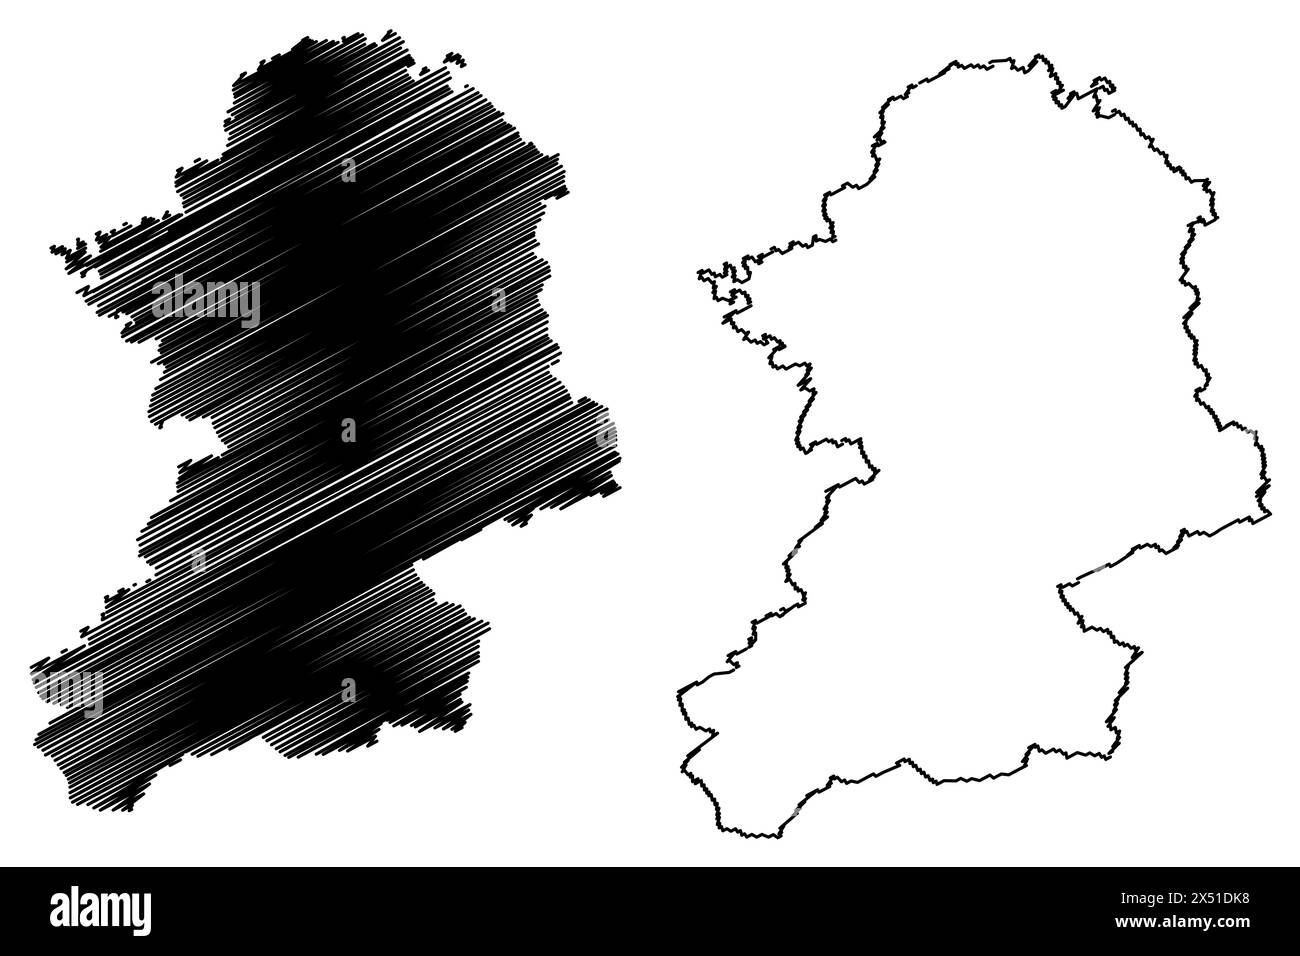 Scheibbs district (Republic of Austria or Österreich, Lower Austria or Niederösterreich state) map vector illustration, scribble sketch Bezirk Scheibb Stock Vector